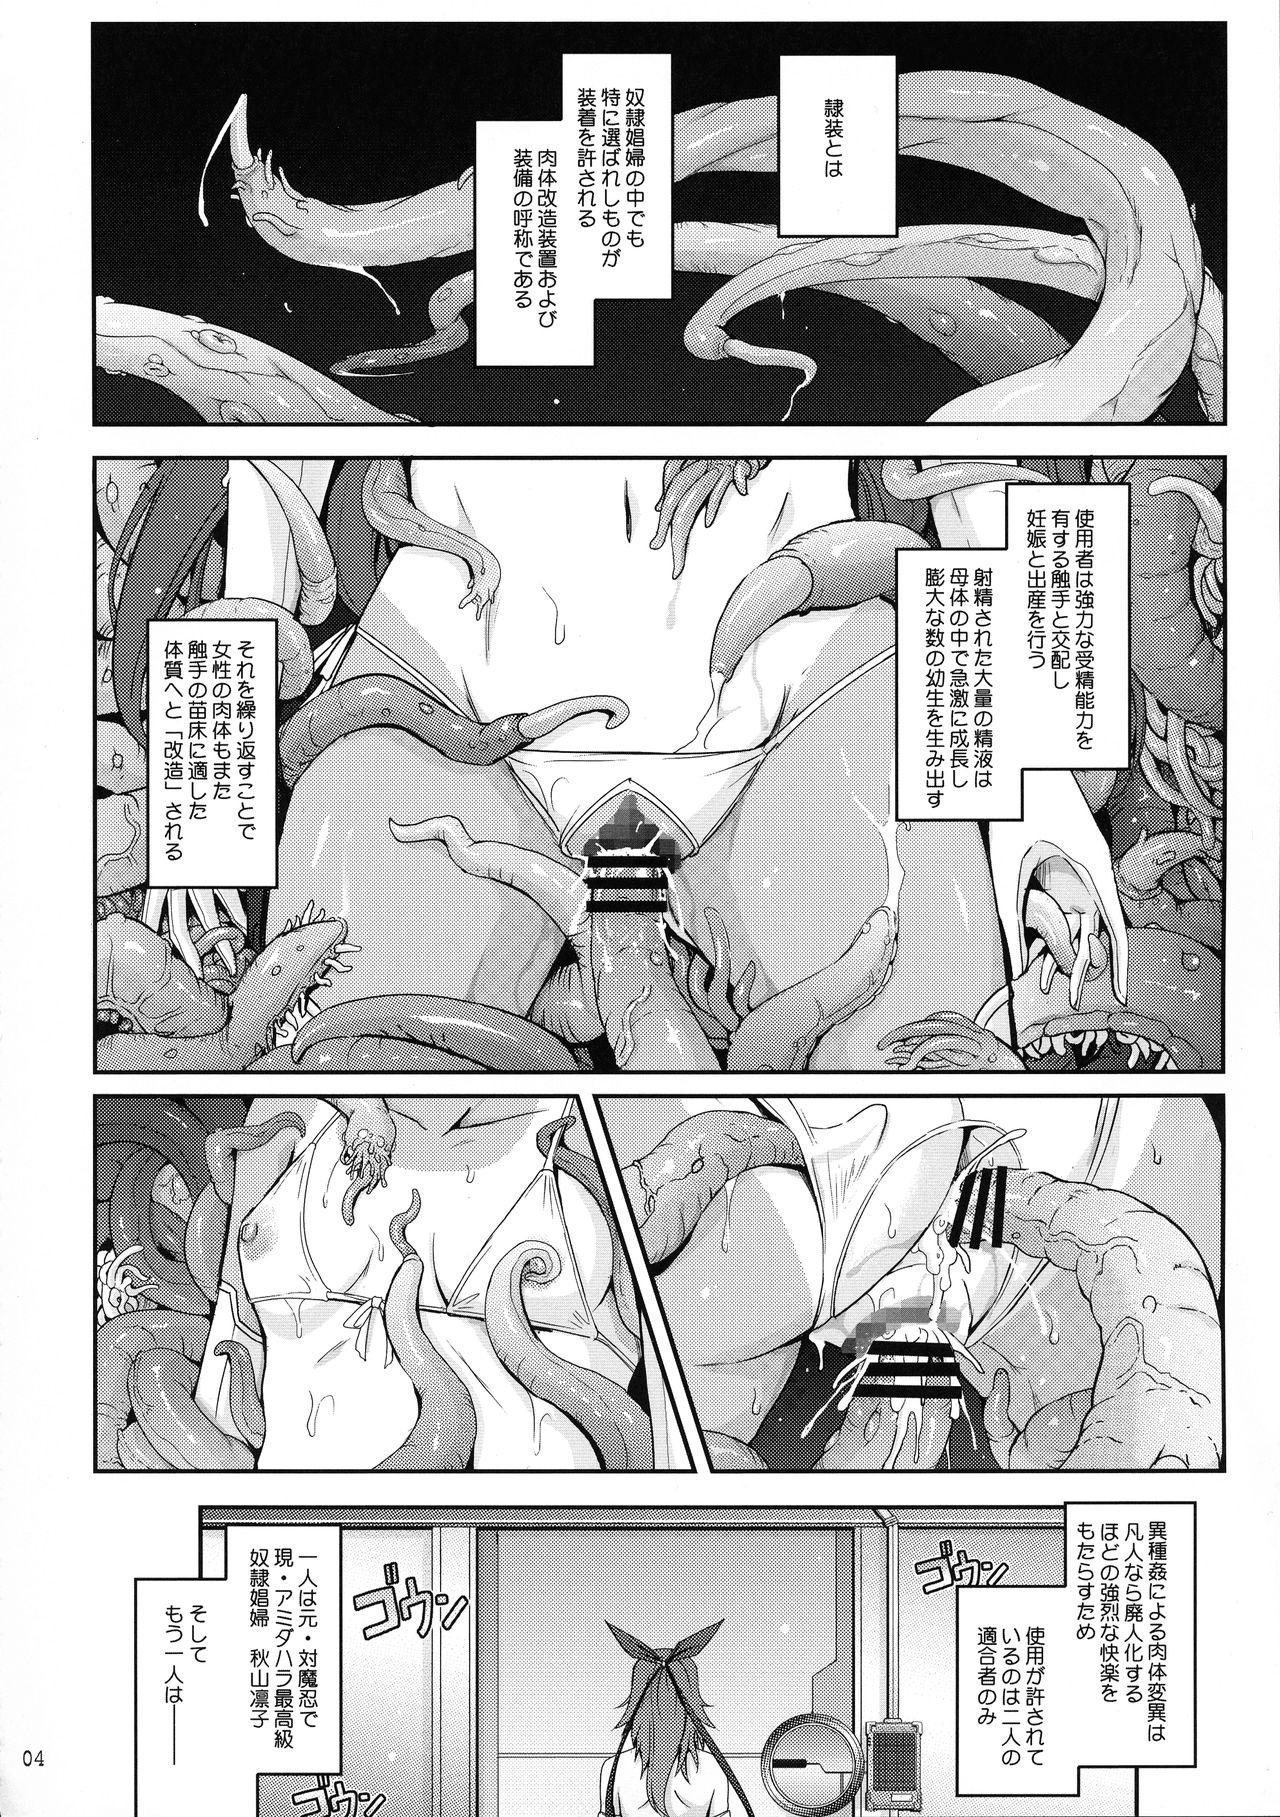 TENTACLES Reisou Taimanin Yukikaze no Koukotsu 5